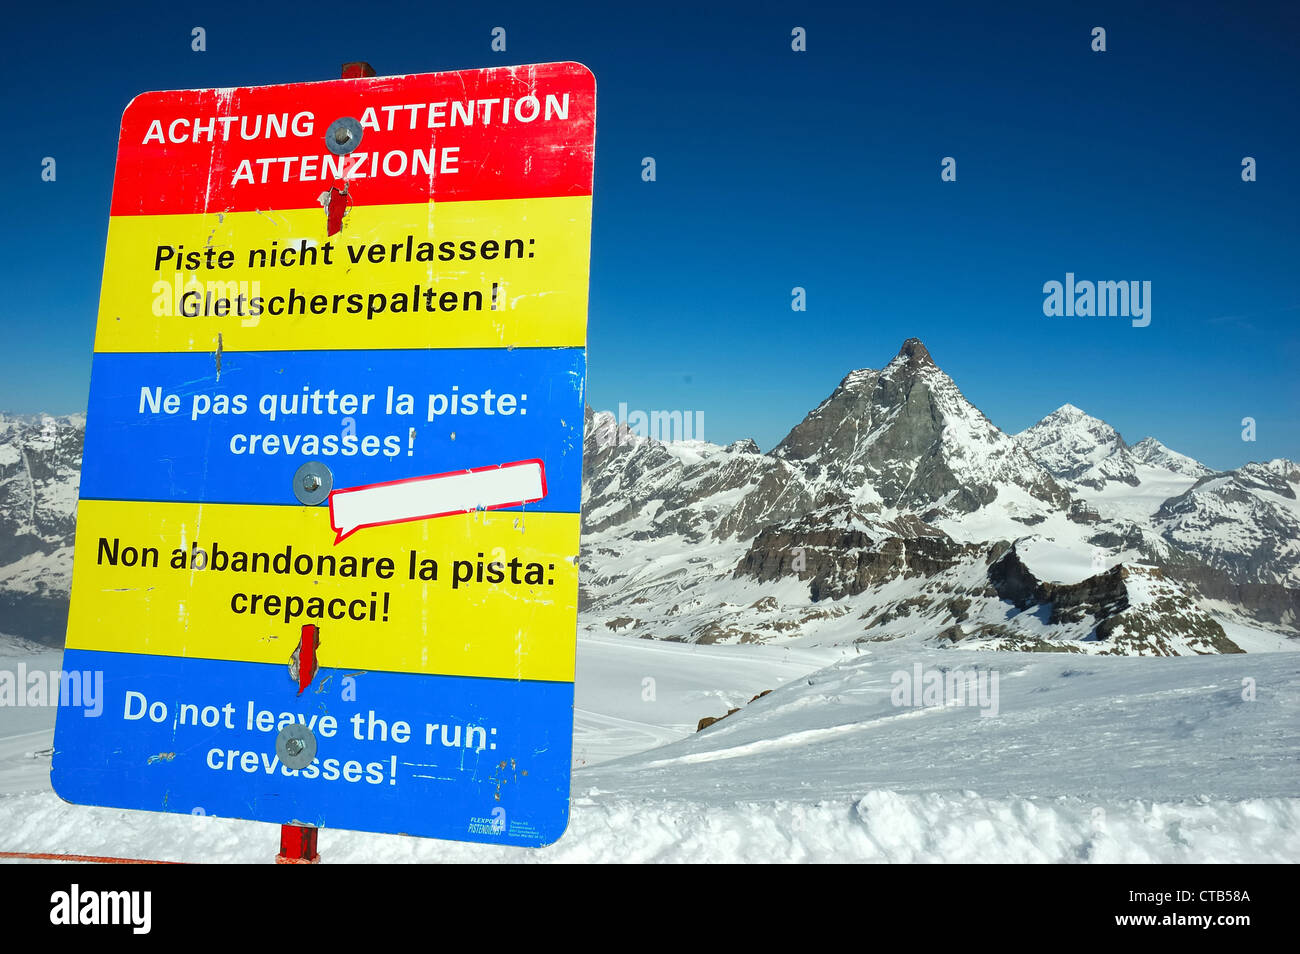 Warning leaving marked protected piste Do not leave run crevassses! against mountain background Matterhorn Zermatt Swiss) Stock Photo